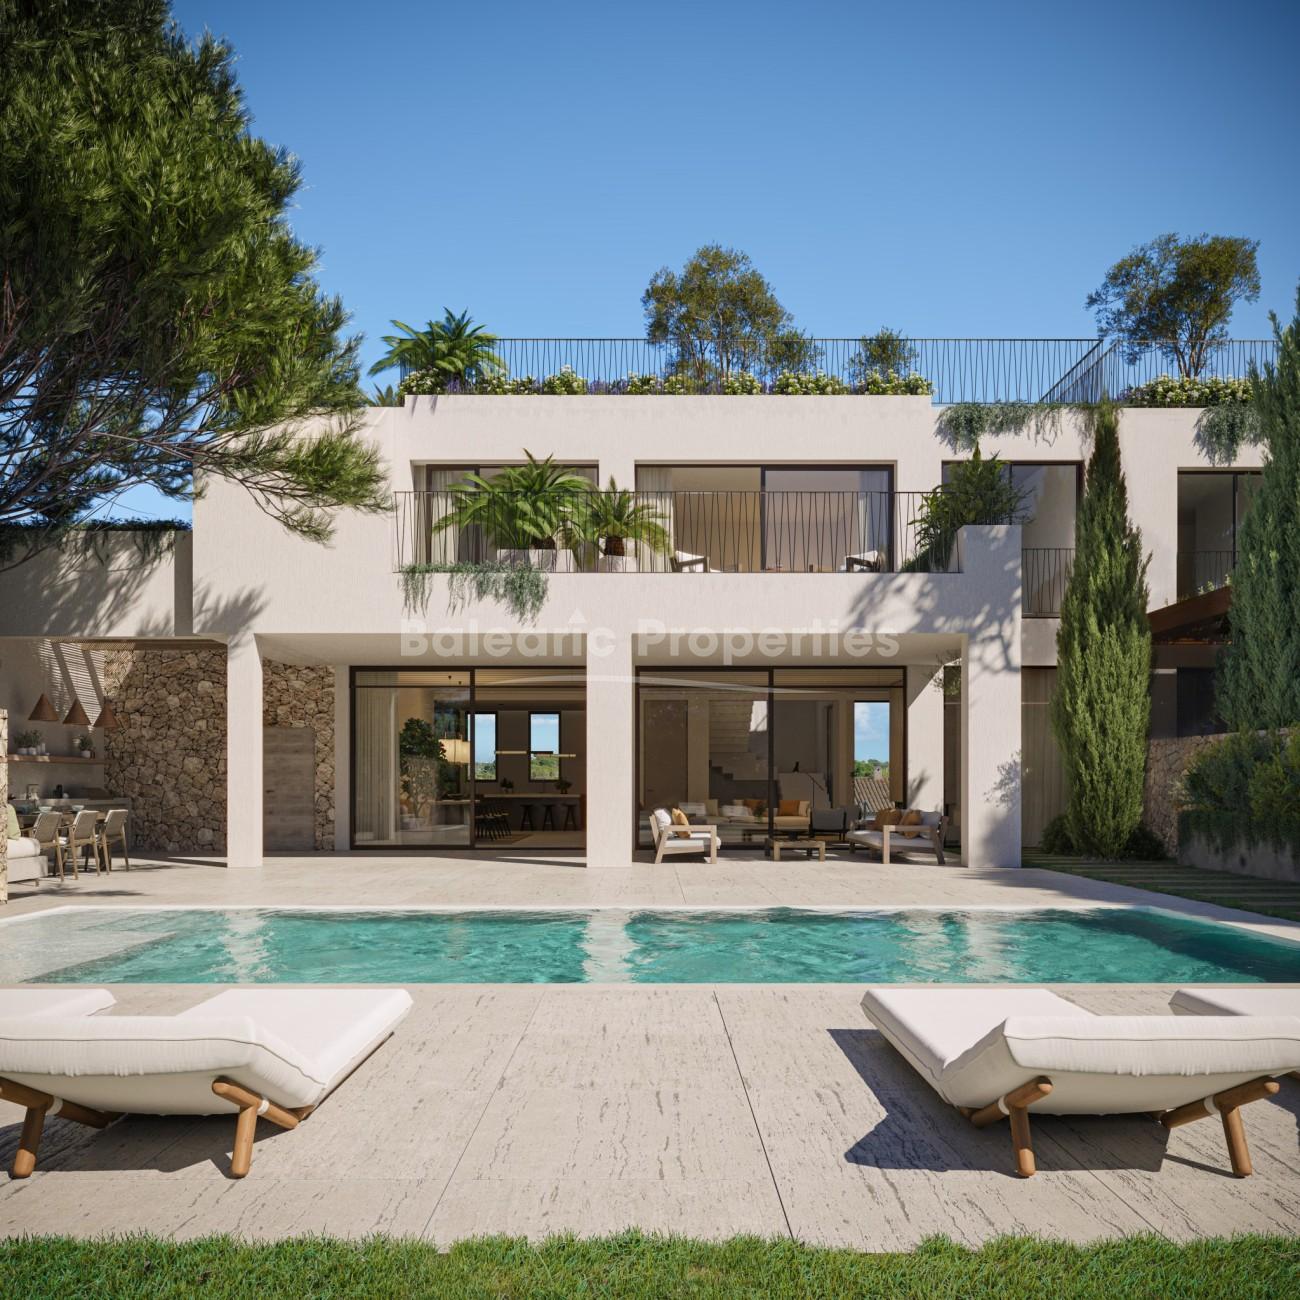 Luxury development of villas for sale close to the sea in Cala Figuera, Mallorca